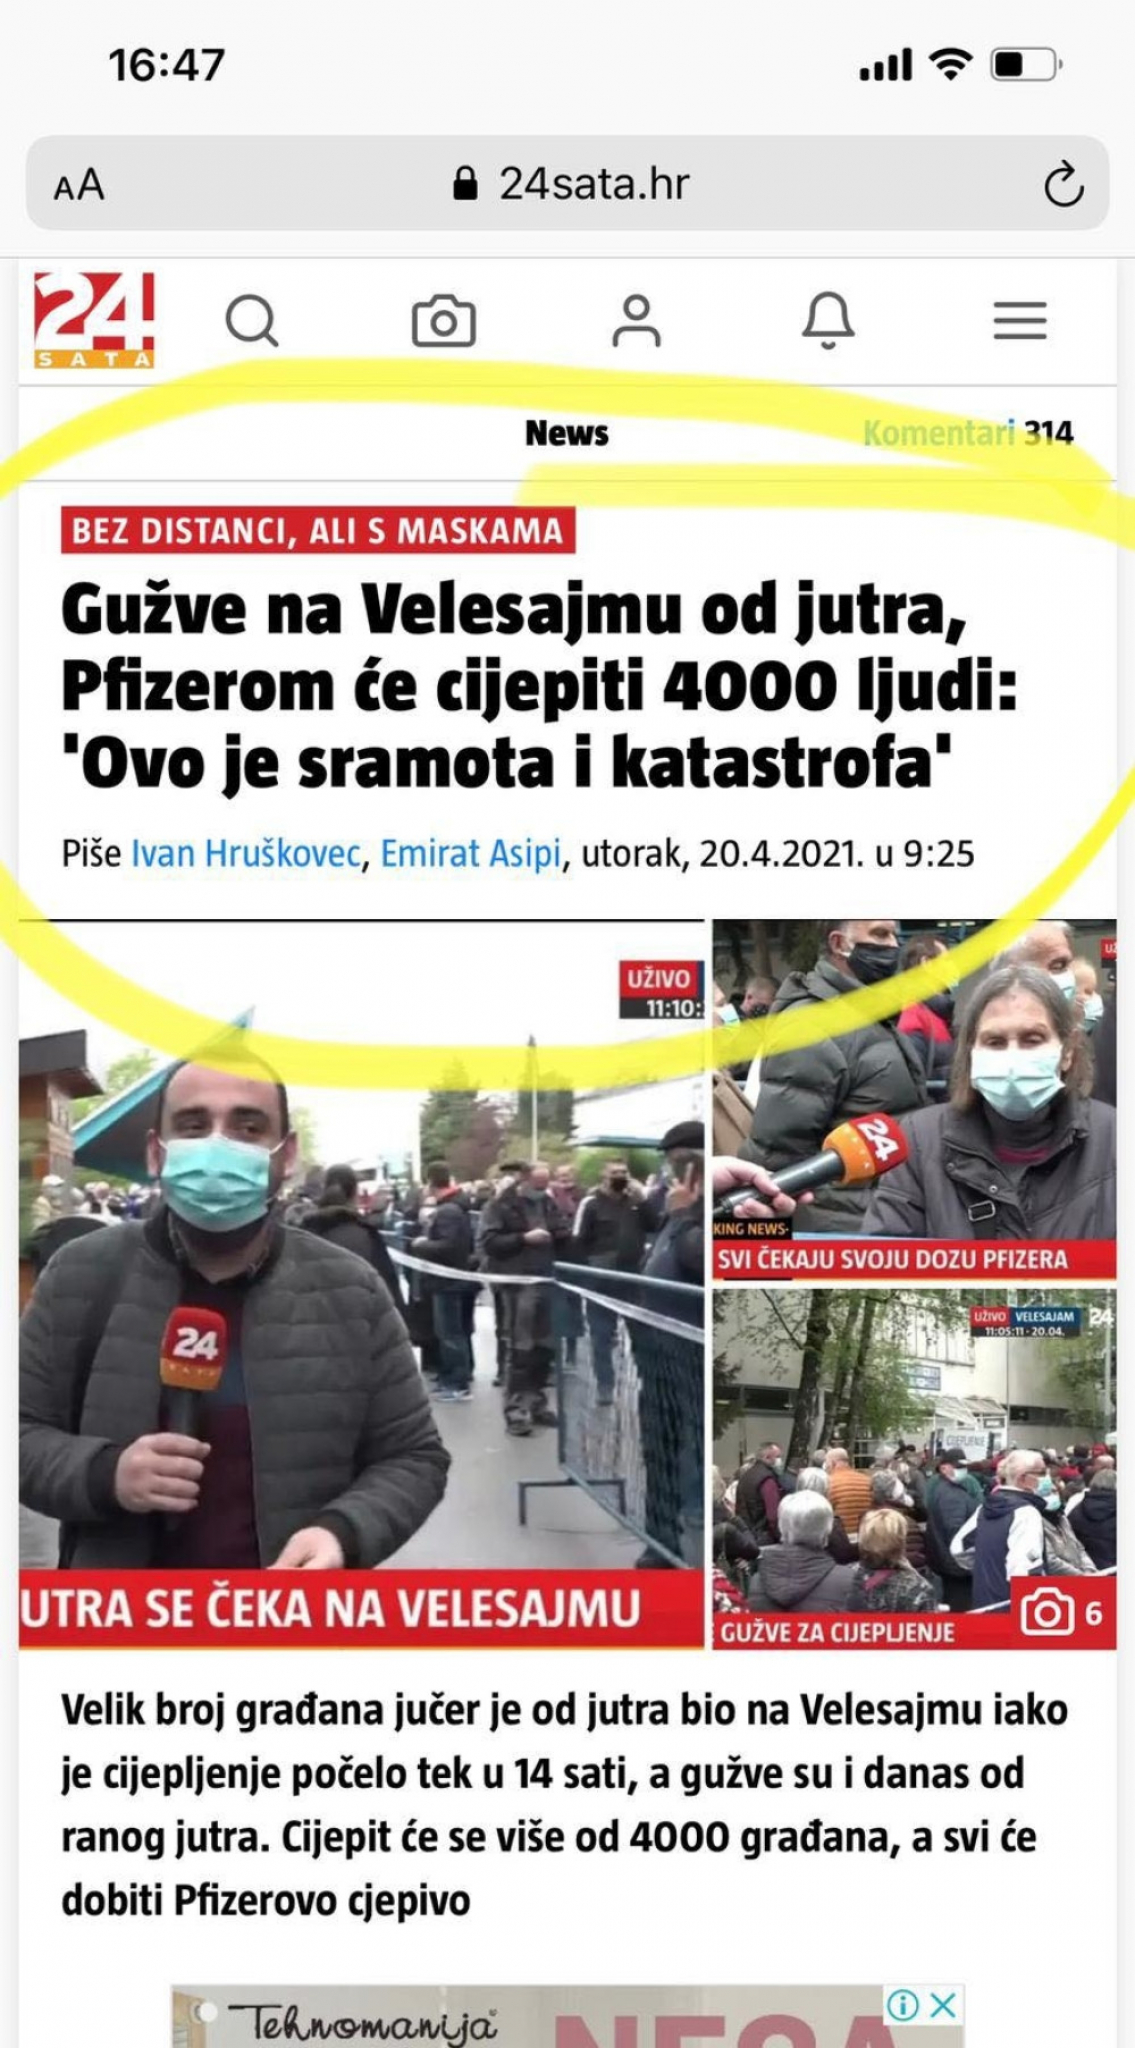 Hrvatski mediji